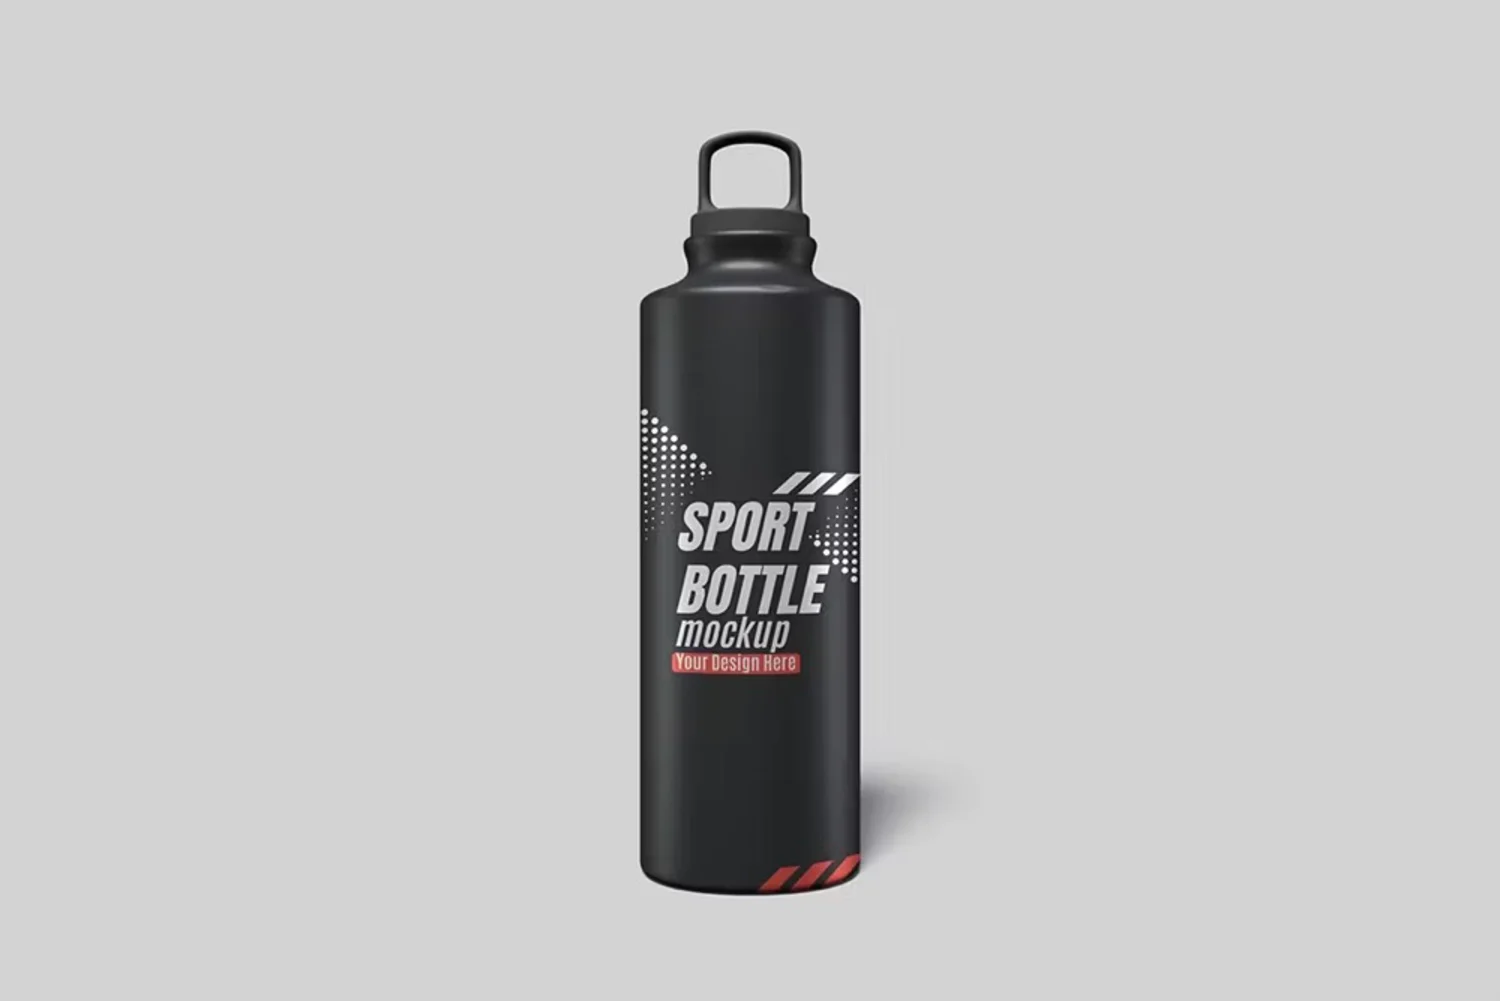 5115 户外运动铝合金保温水壶图案定制设计展示PSD样机素材 Sport Bottle Mockup@GOOODME.COM